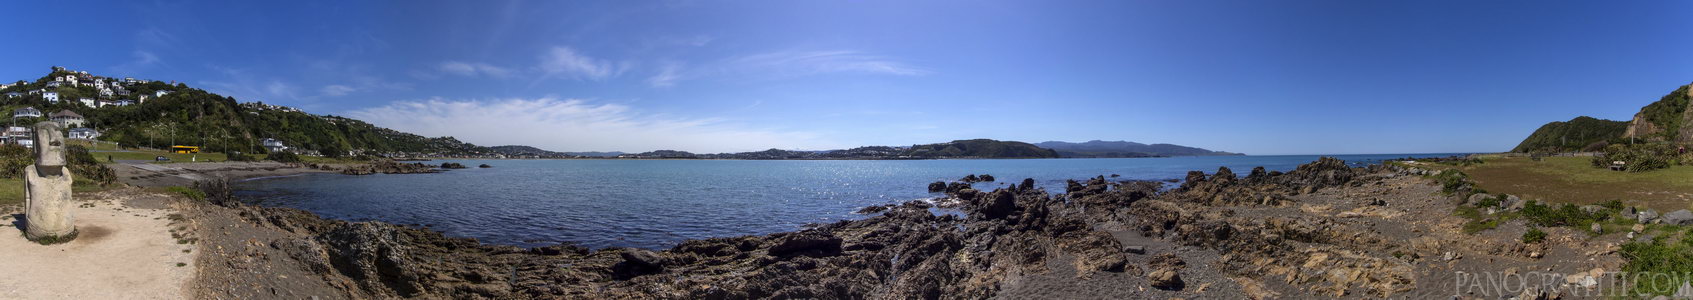 Dorrie Leslie Park - View of Lyall Bay